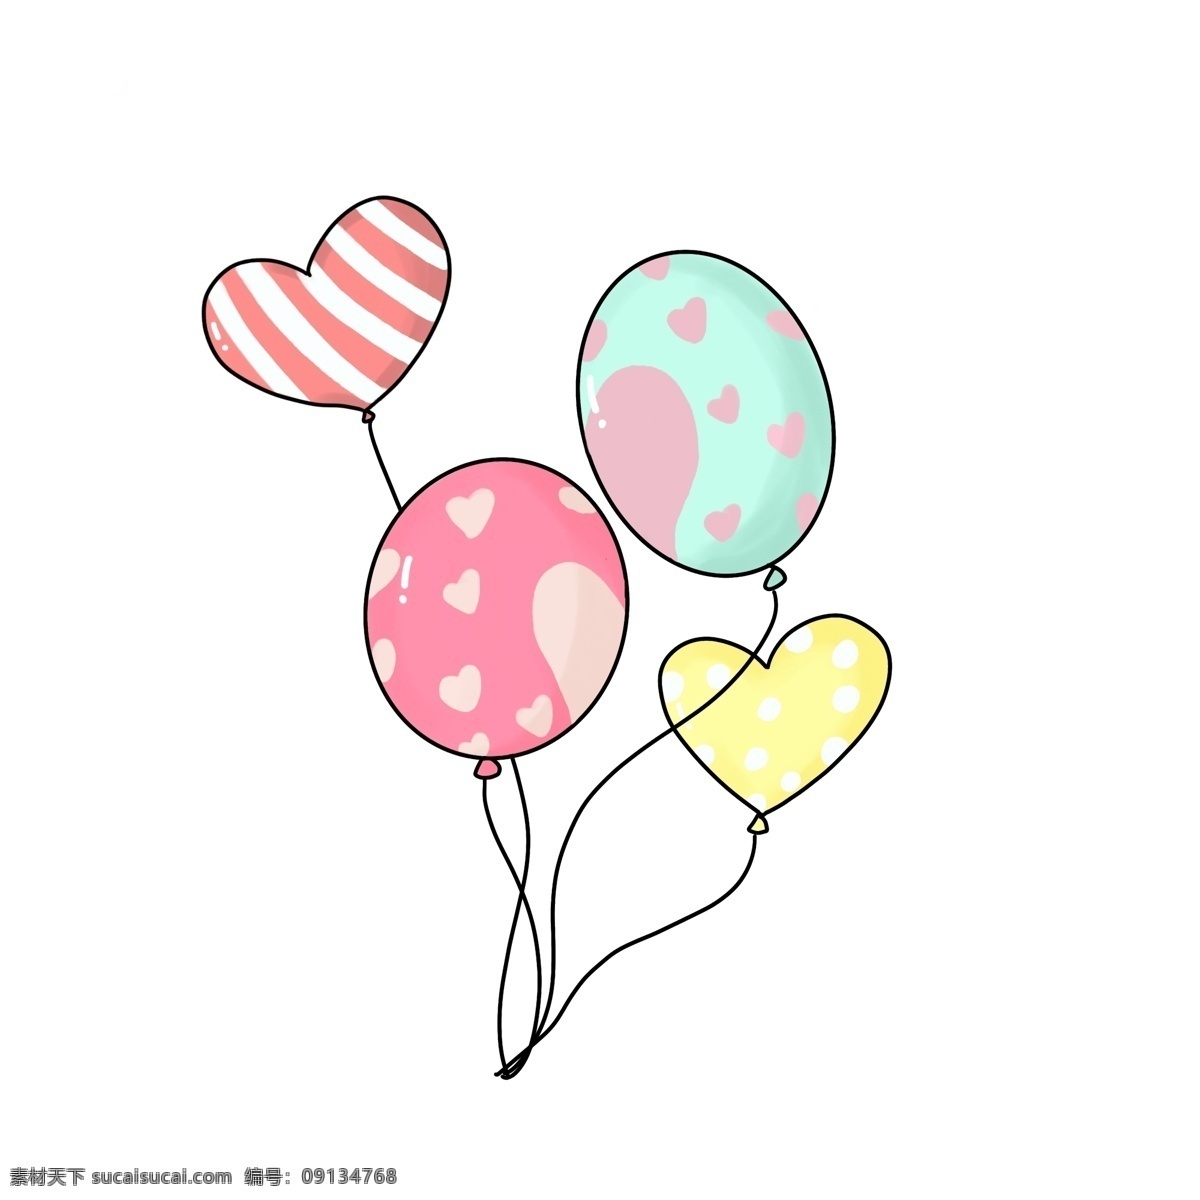 可爱 彩色 爱心 气球 卡通 手绘 爱心气球 条纹 波点 红色 粉色 黄色 心形